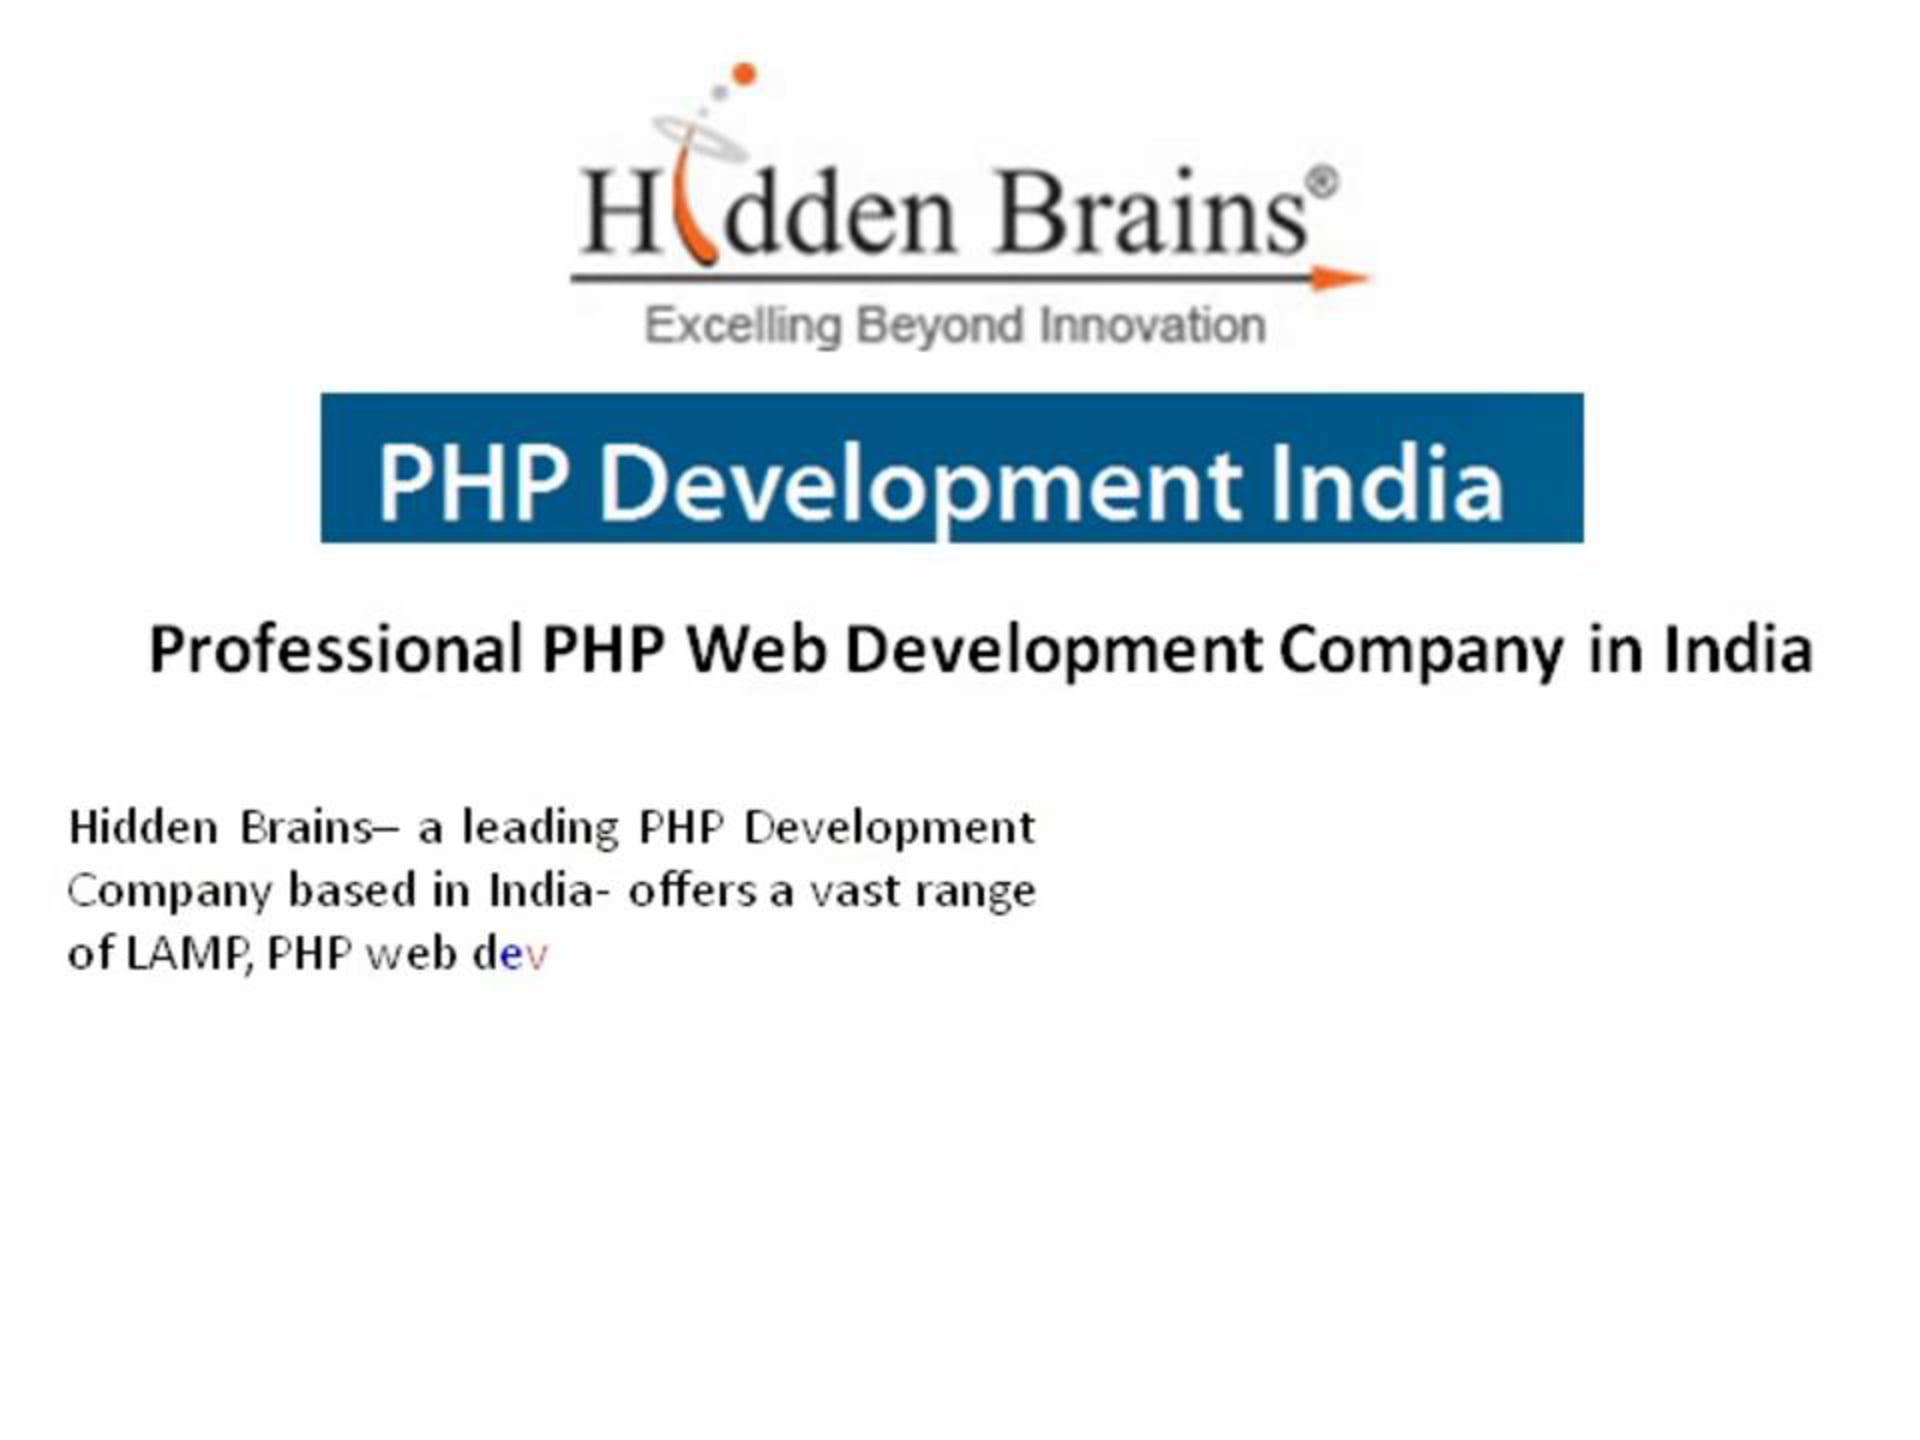 PHP Development India